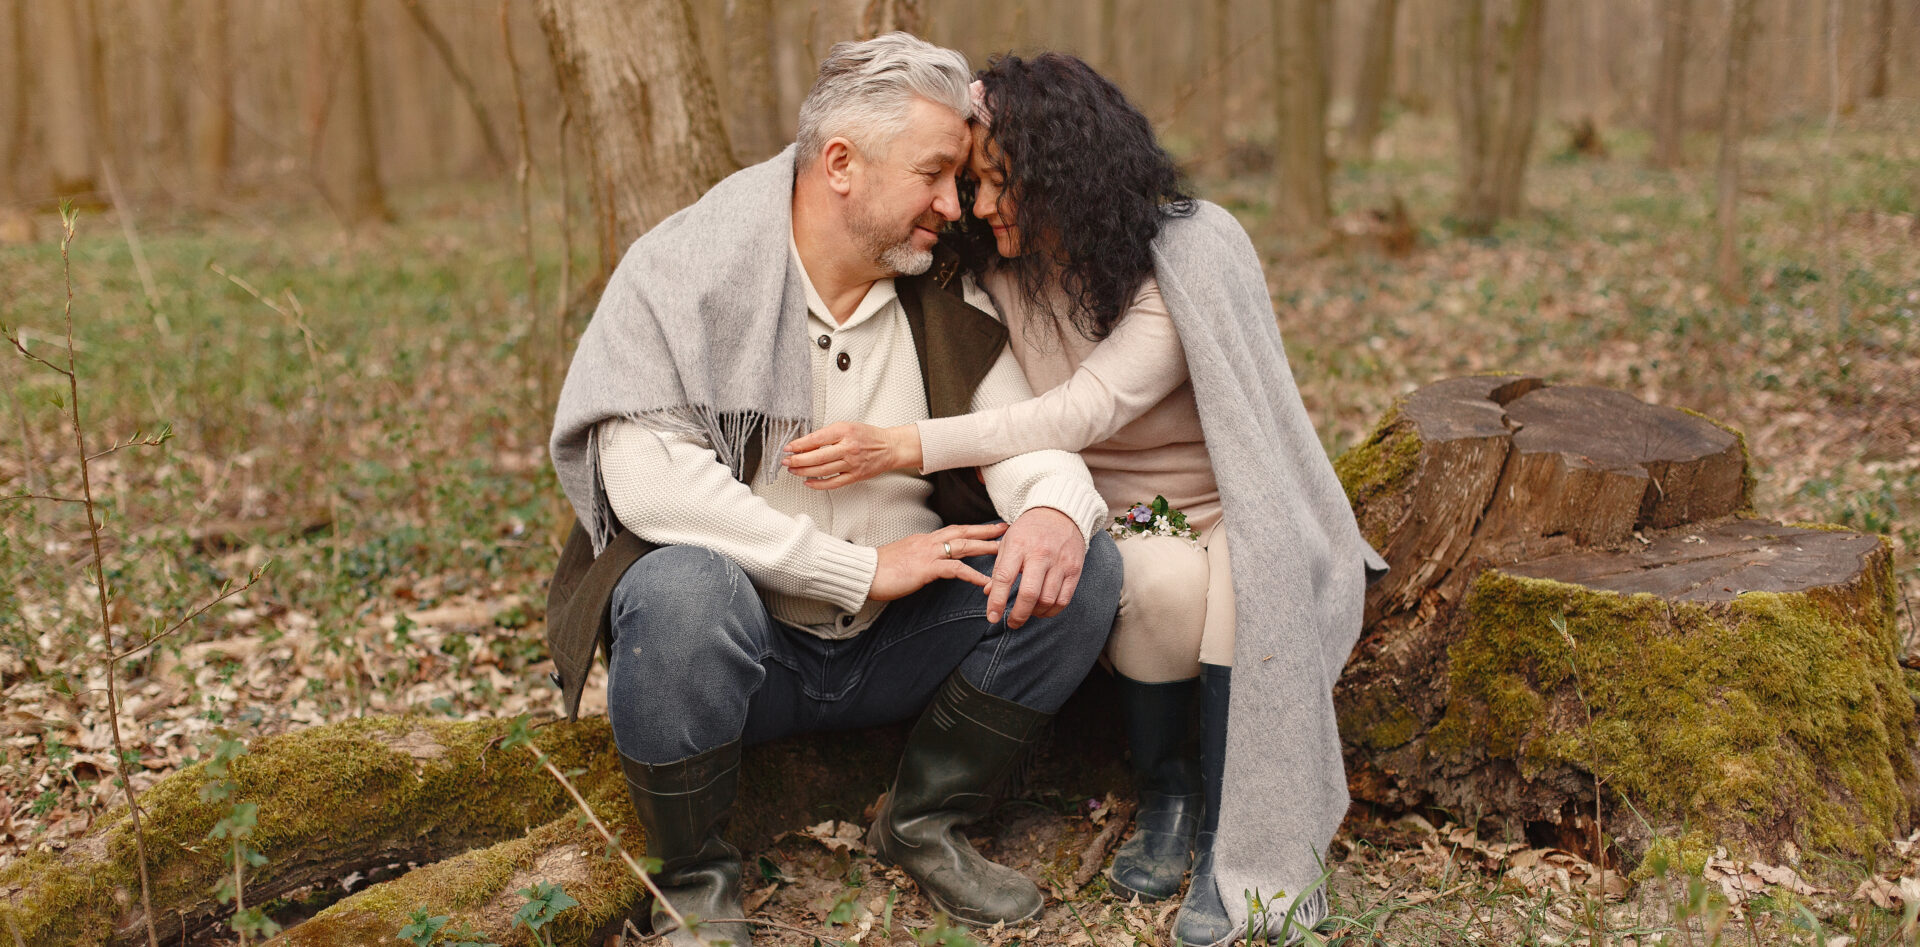 Paartherapie, Bewegend lieben - Paar-Coaching der neuen Zeit mit Sigrun Wegner - intimes Paar im Frühlingswald